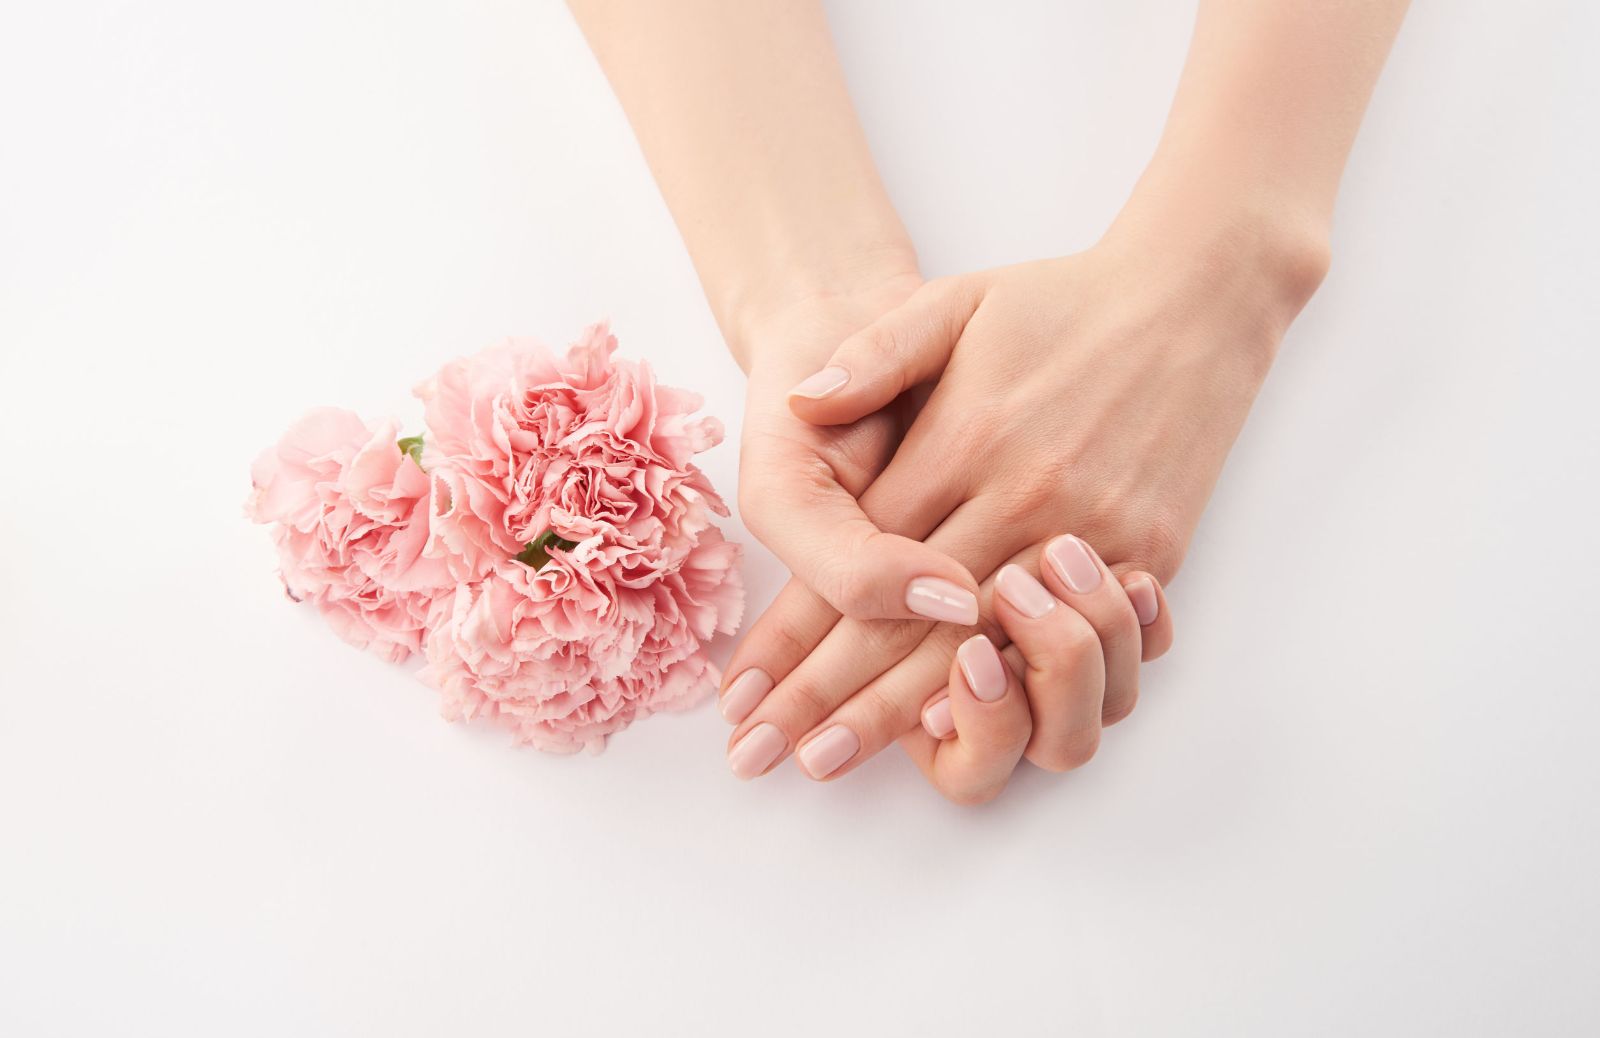 Unghie rosa quarzo: la manicure anti-ansia per l'autunno 2020